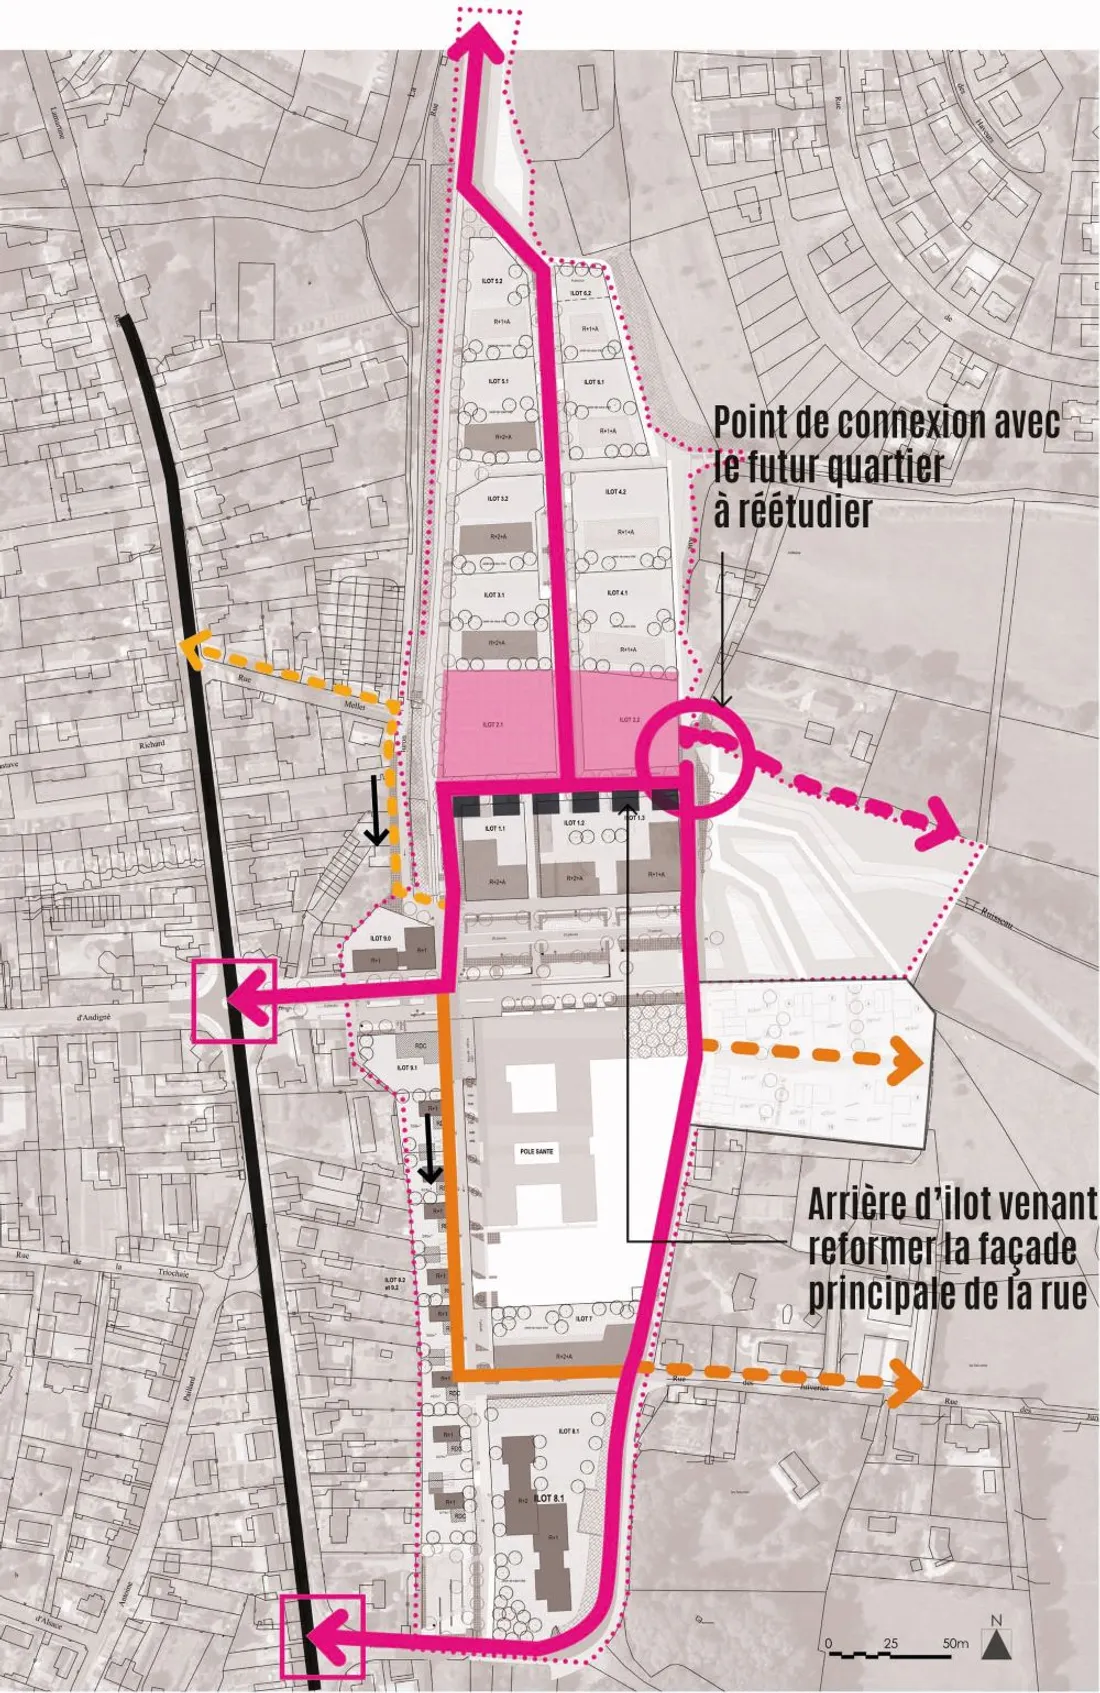 Plan circulation quartier gare Segré_08 07 21_Résonance